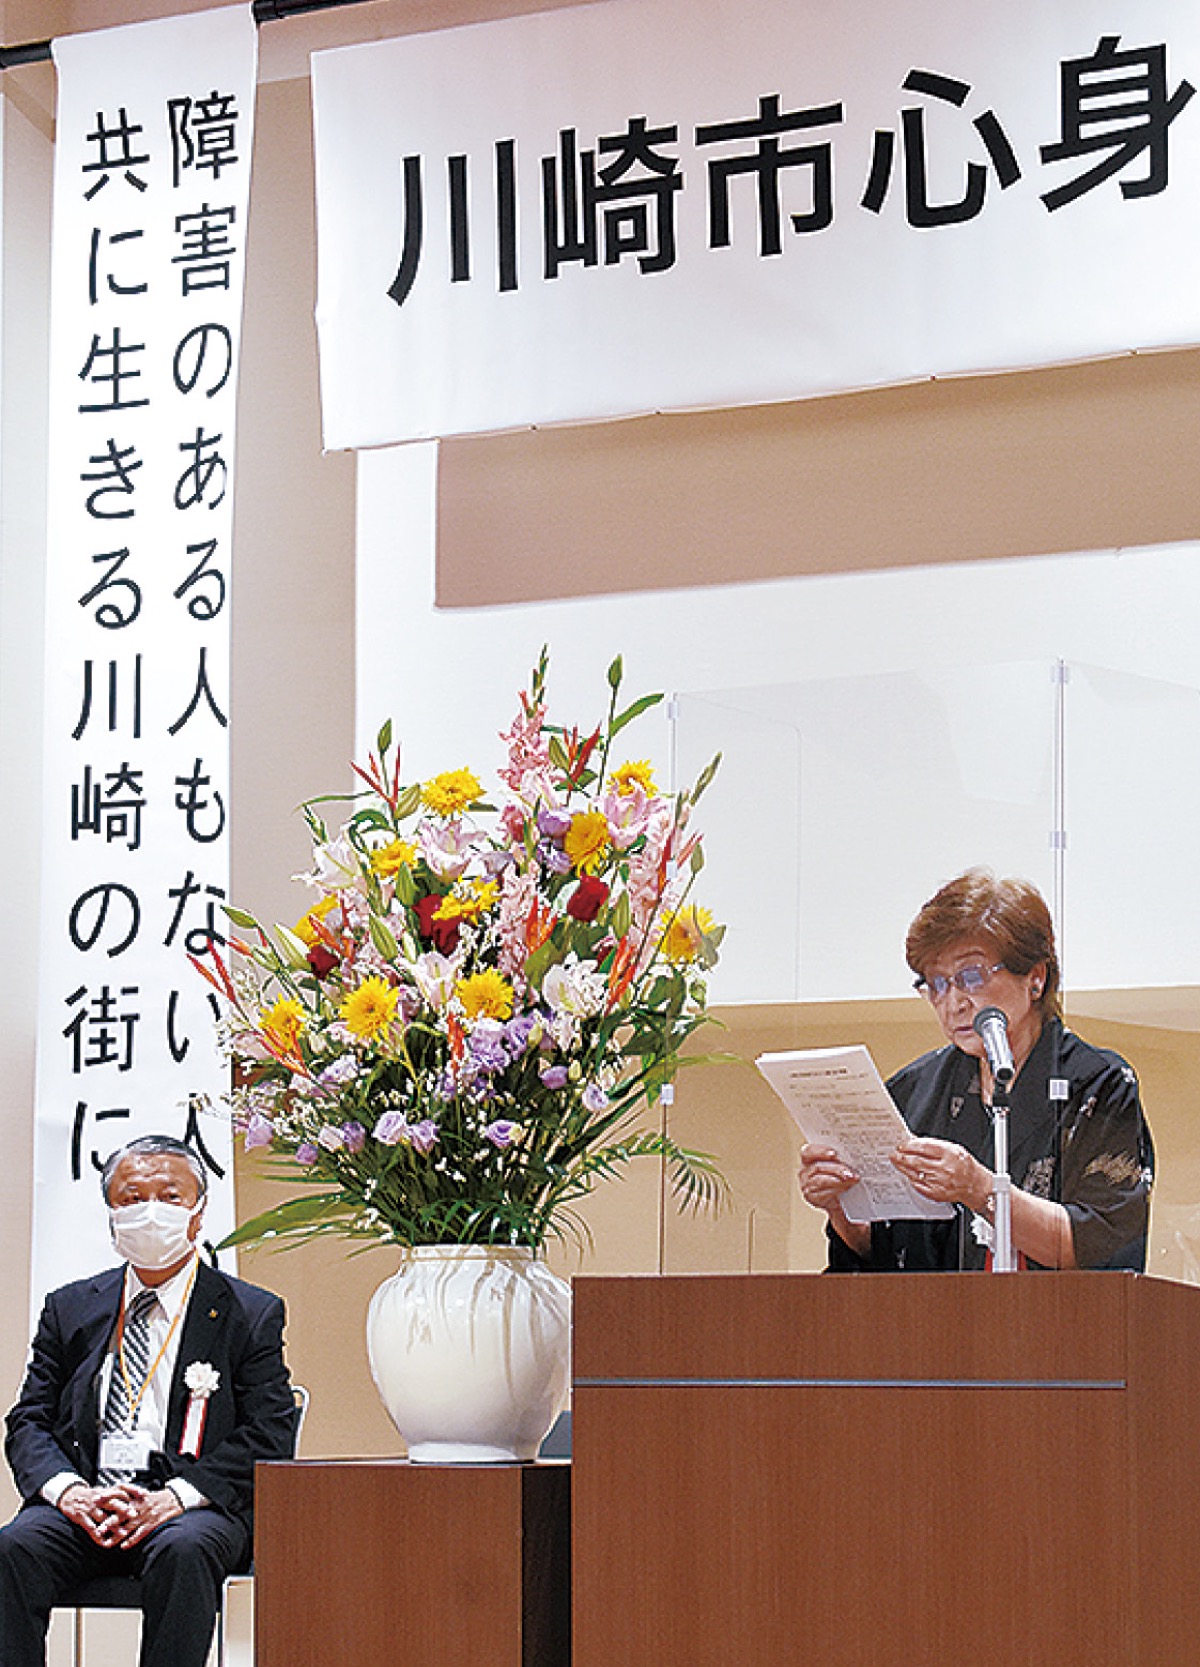 ｢共に生きる川崎｣を宣言